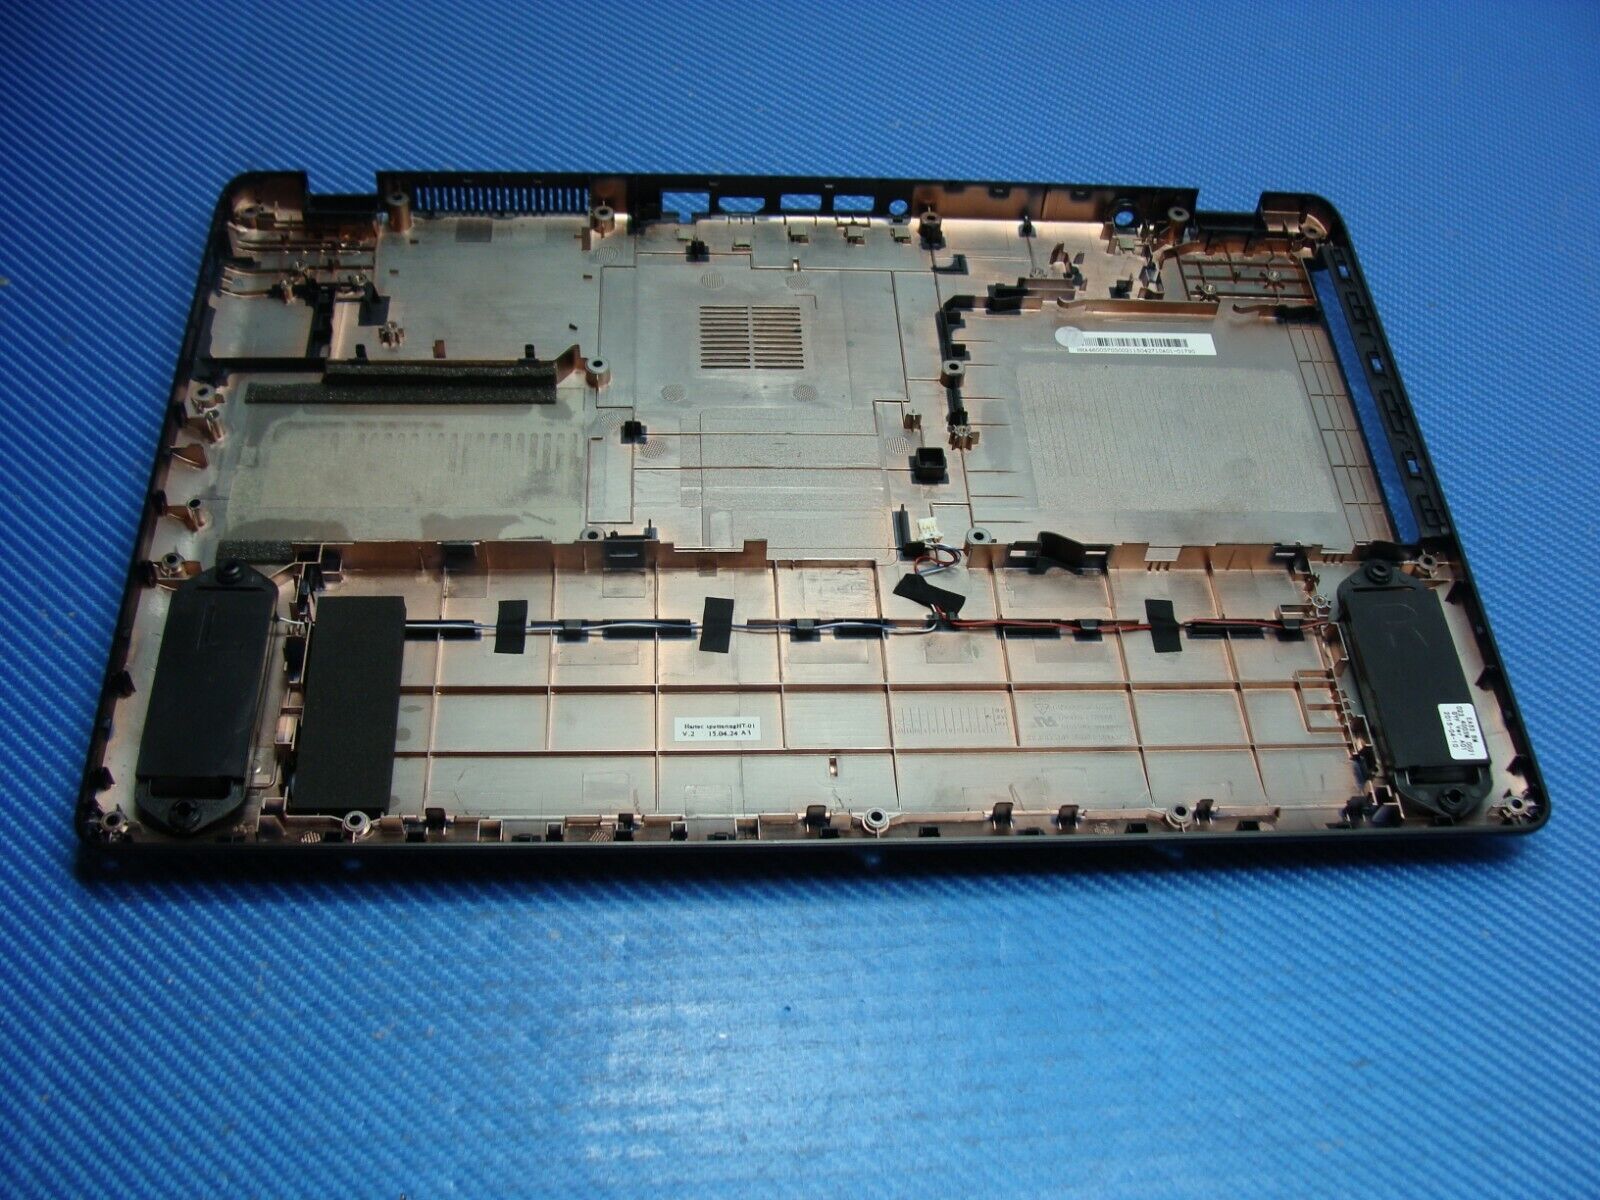 Acer Aspire ES1-512-C1W0 15.6